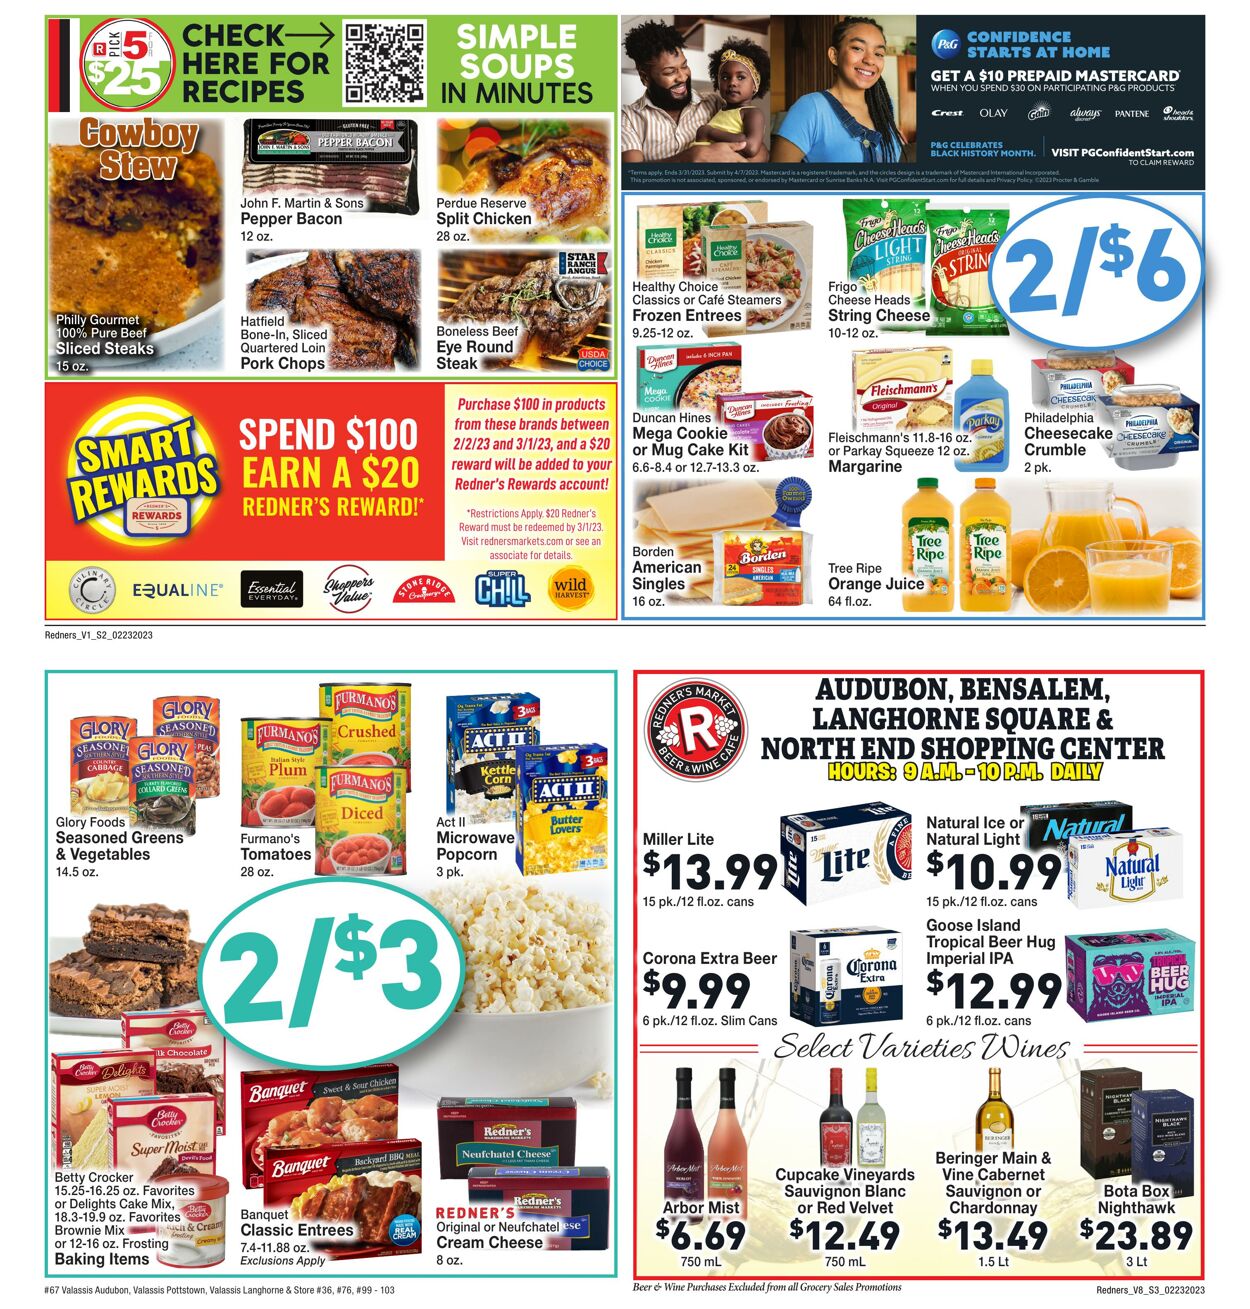 Weekly ad Redner's Markets 02/23/2023 - 03/01/2023